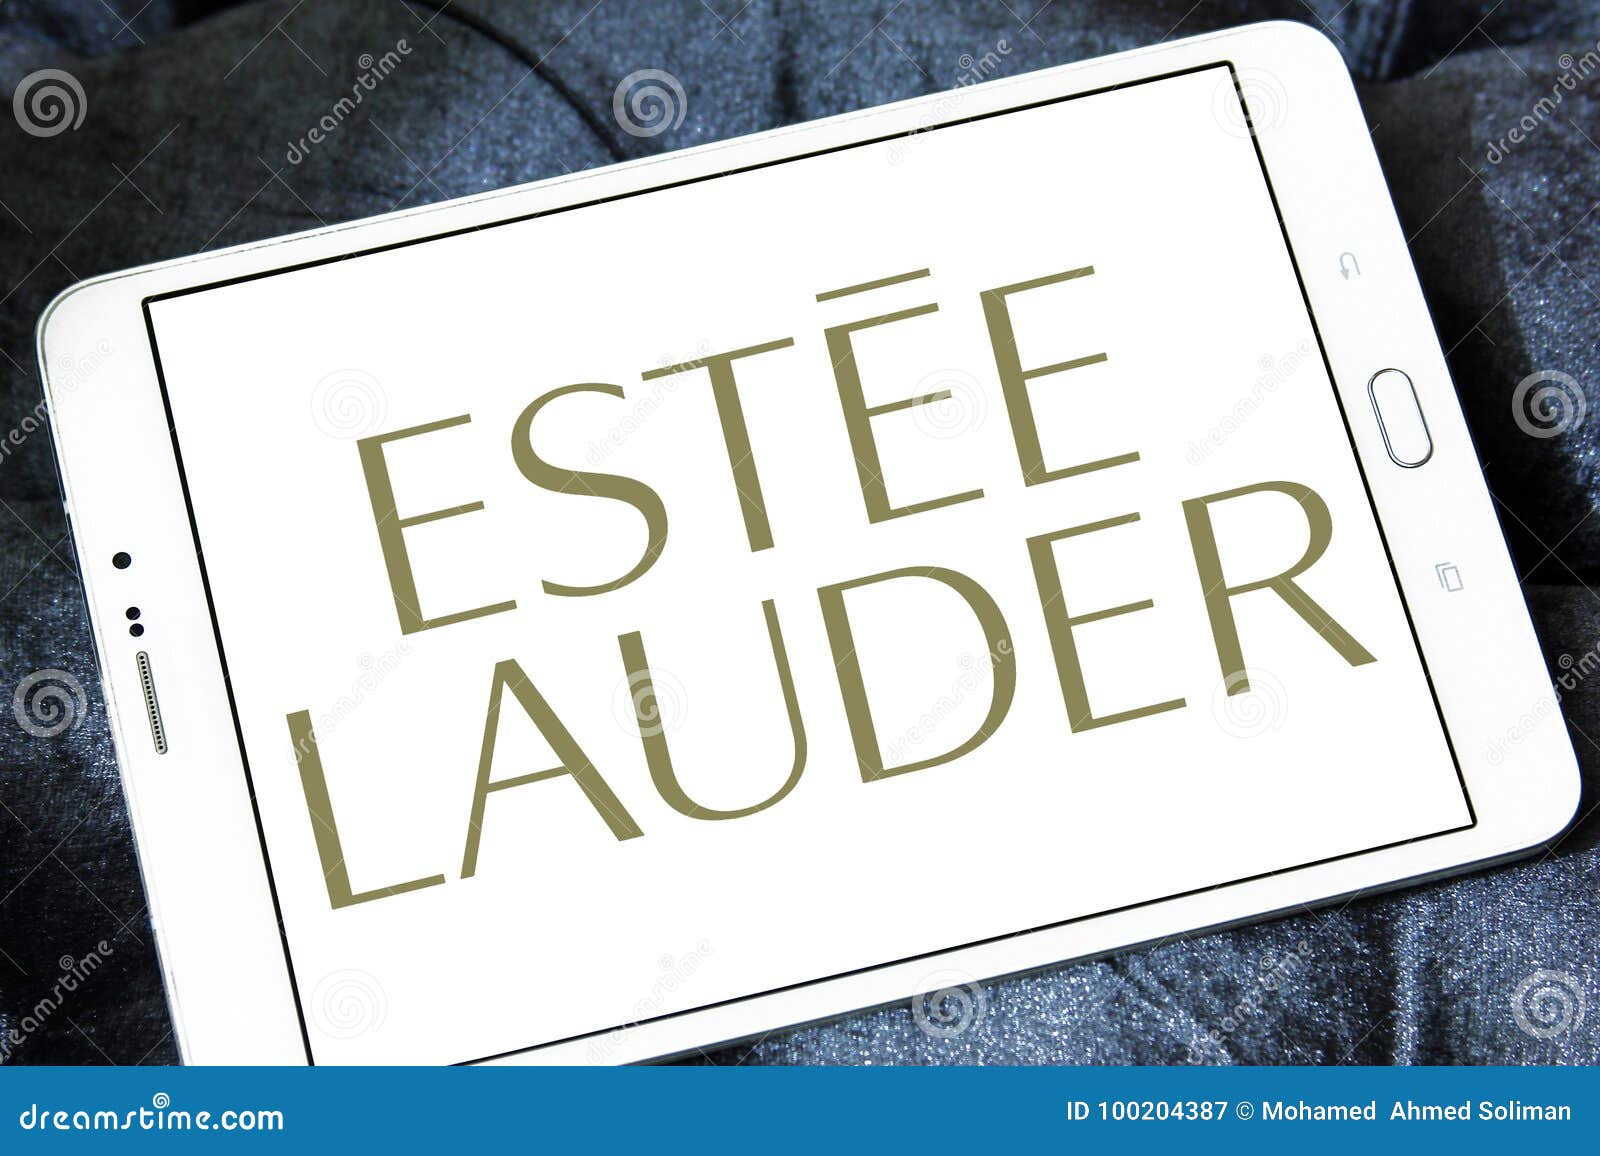 EstÃ©e Lauder Companies Logo Editorial Photography - Image of douglas,  europe: 100204387